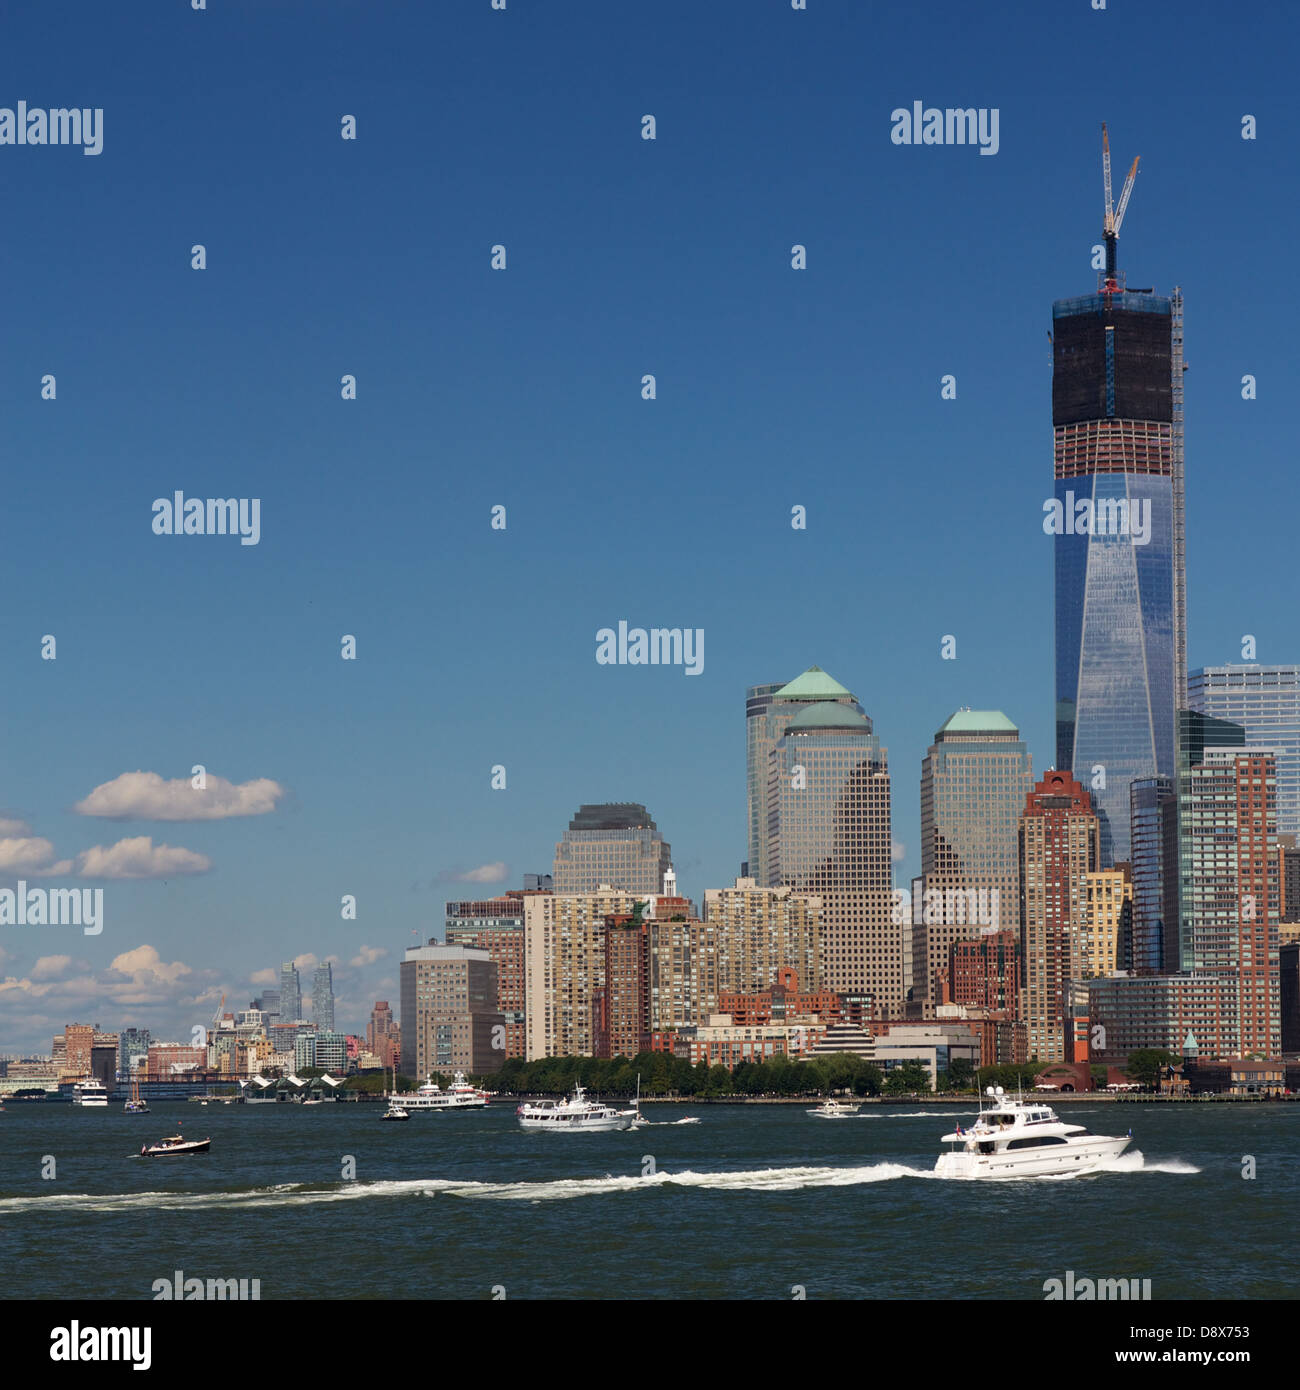 La sezione dello skyline di Manhattan, New York, NY, STATI UNITI D'AMERICA, a Battery Park con la Freedom Tower in costruzione. Foto Stock